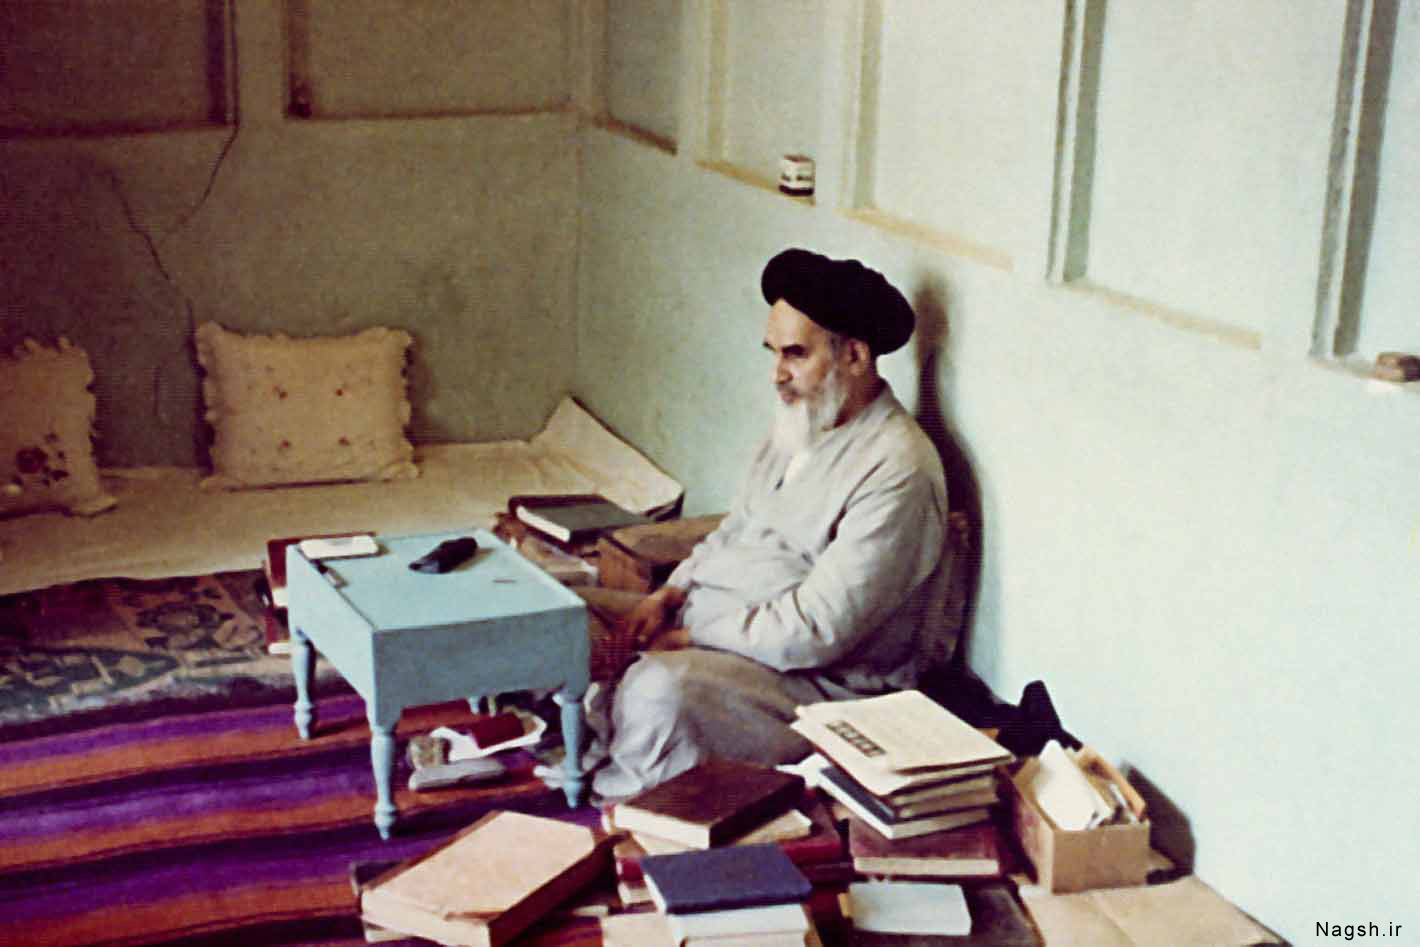 امام در اتاق ساده با کتابهای بسیار